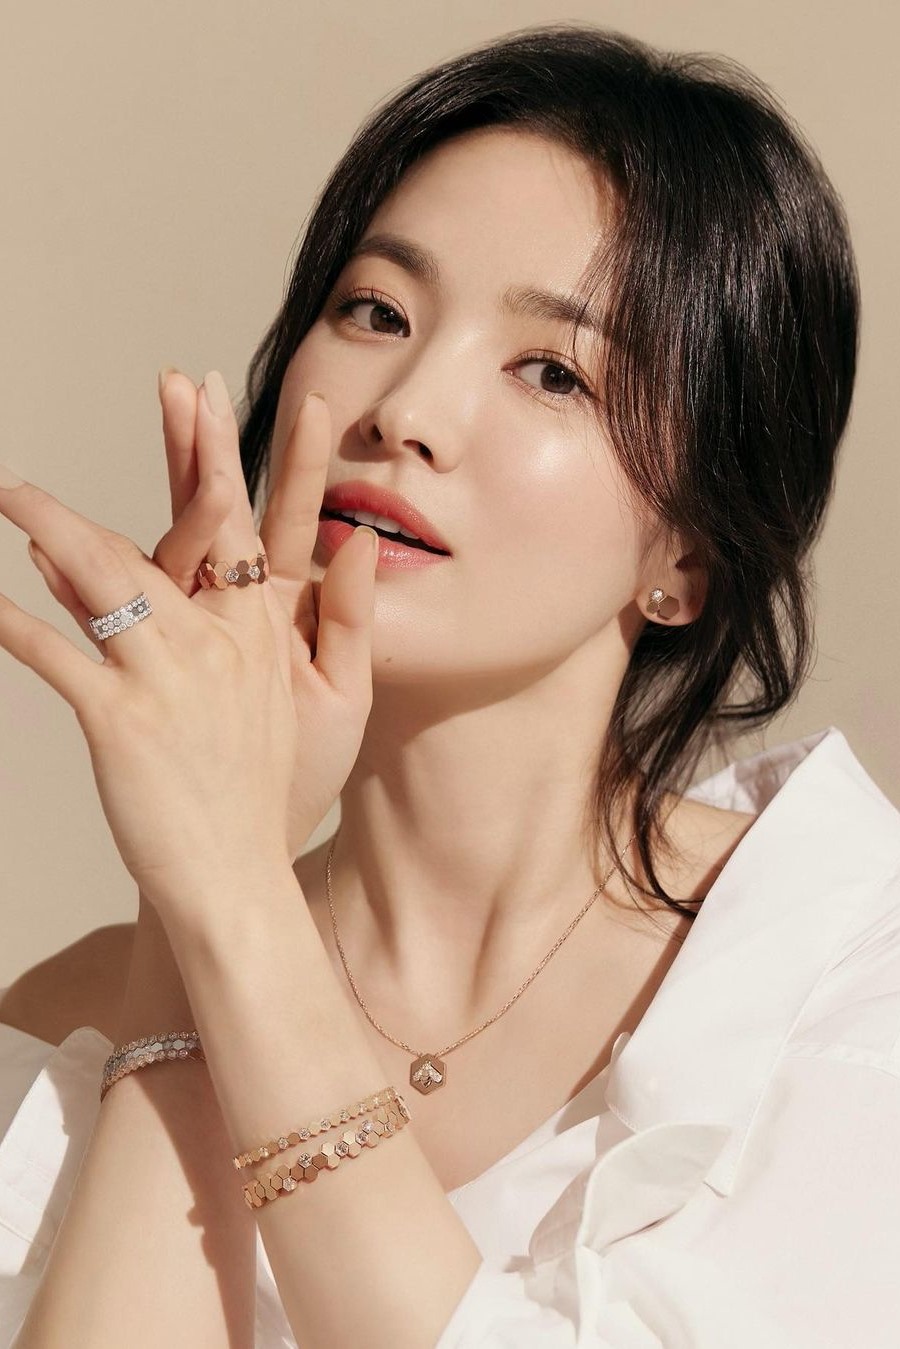 Song Hye Kyo liên tục tụt hạng trên các bảng xếp hạng nhan sắc sau 3 năm ly hôn Song Joong Ki. Ảnh: ST.